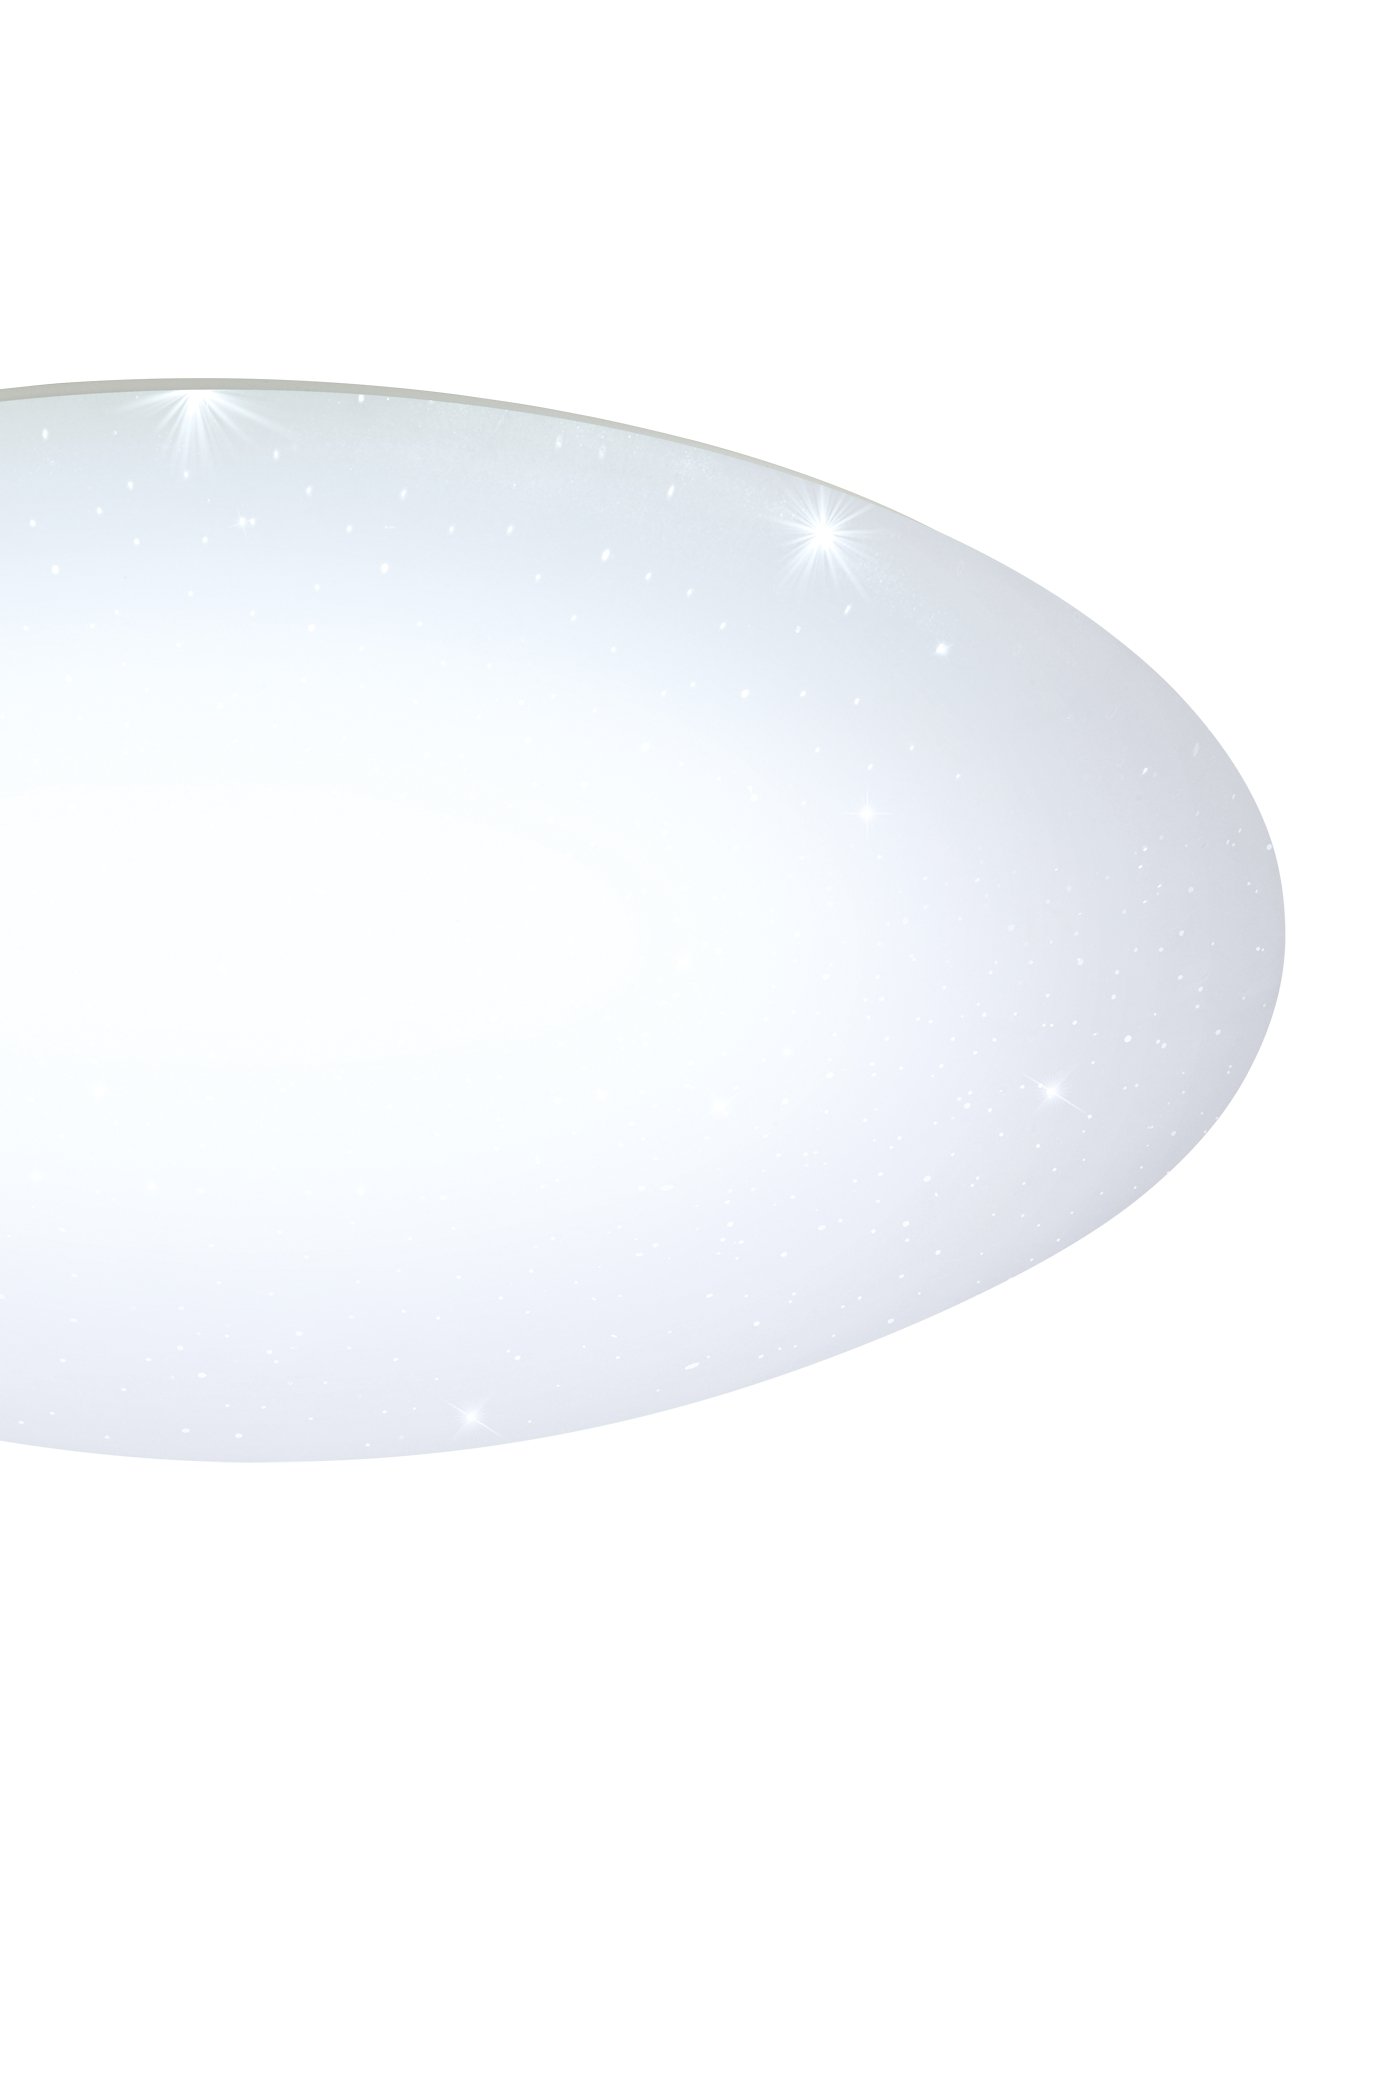   
                        Світильник стельовий EGLO (Австрія) 14878    
                         у стилі модерн.  
                        Тип джерела світла: cвітлодіодні led, енергозберігаючі, розжарювання.                         Форма: коло.                         Кольори плафонів і підвісок: білий.                         Матеріал: пластик, метал.                          фото 2